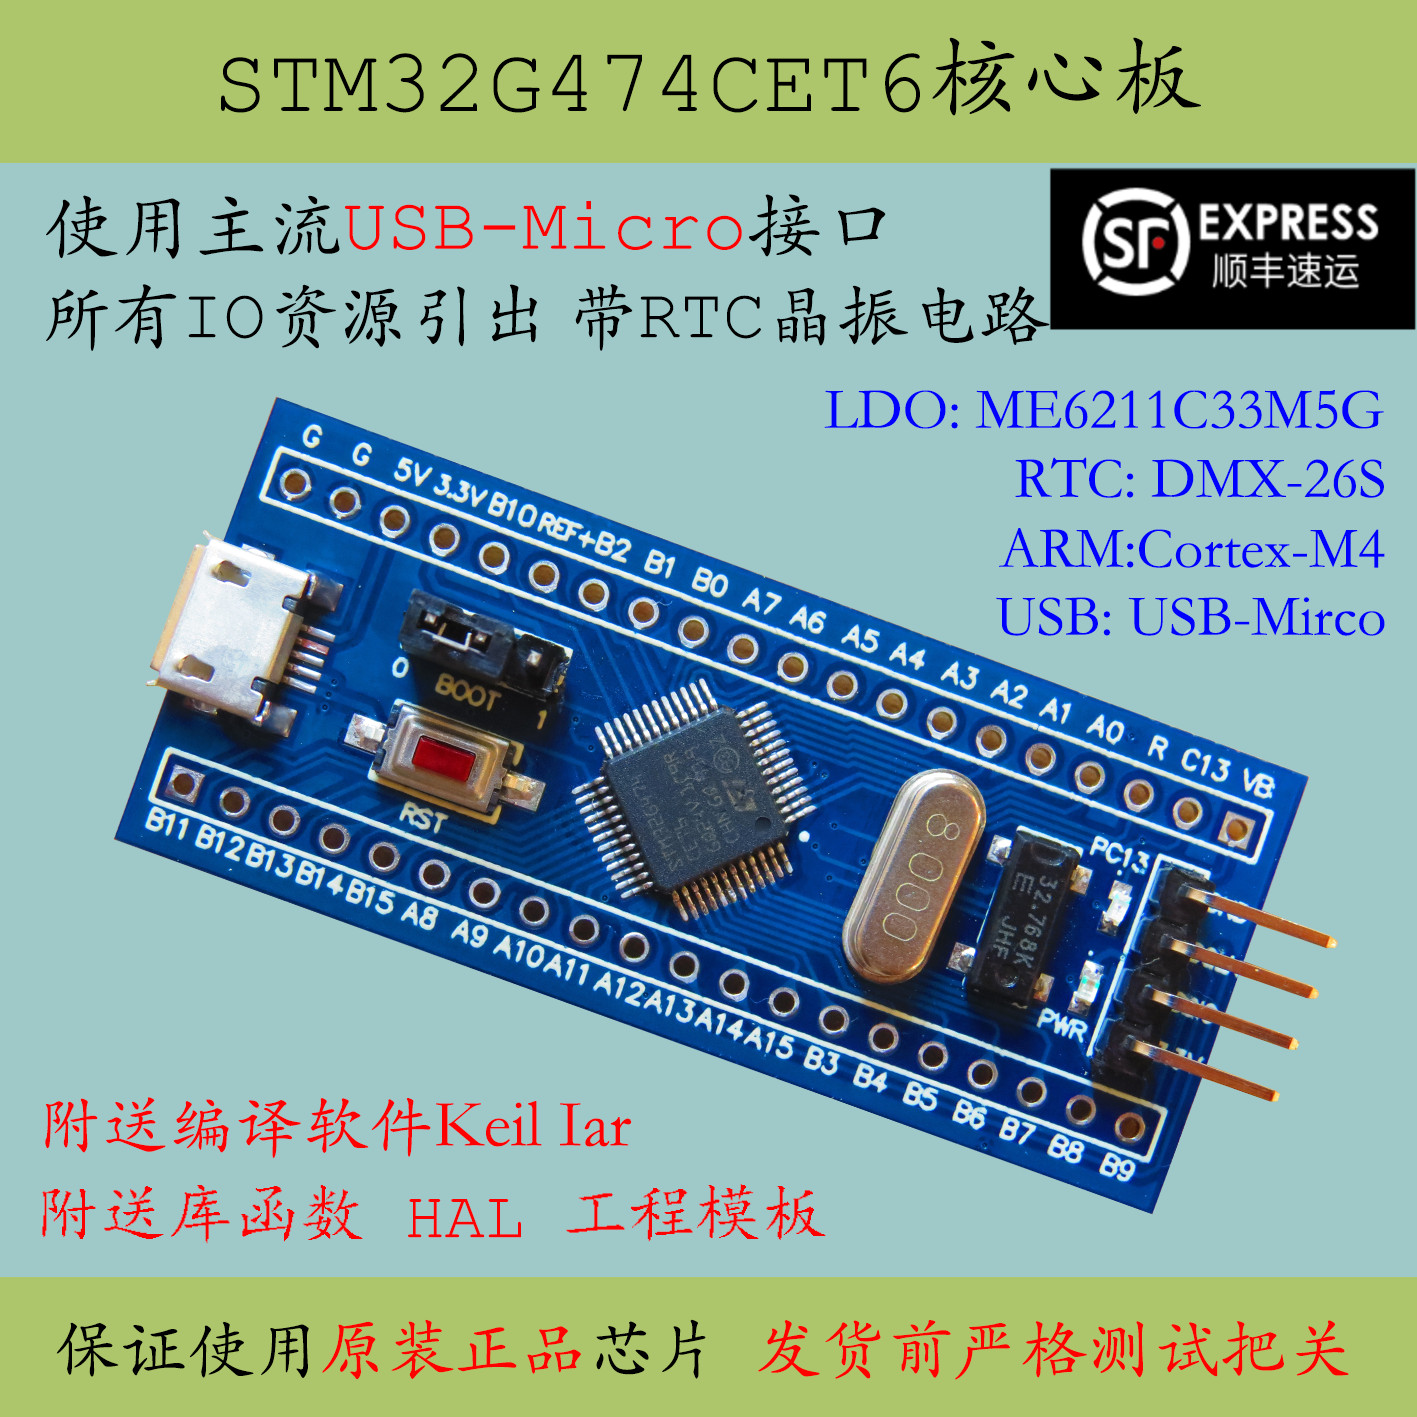 Stm32g474 core board stm32g474cet6 minimum system cortex-m4 new G4 development board USB